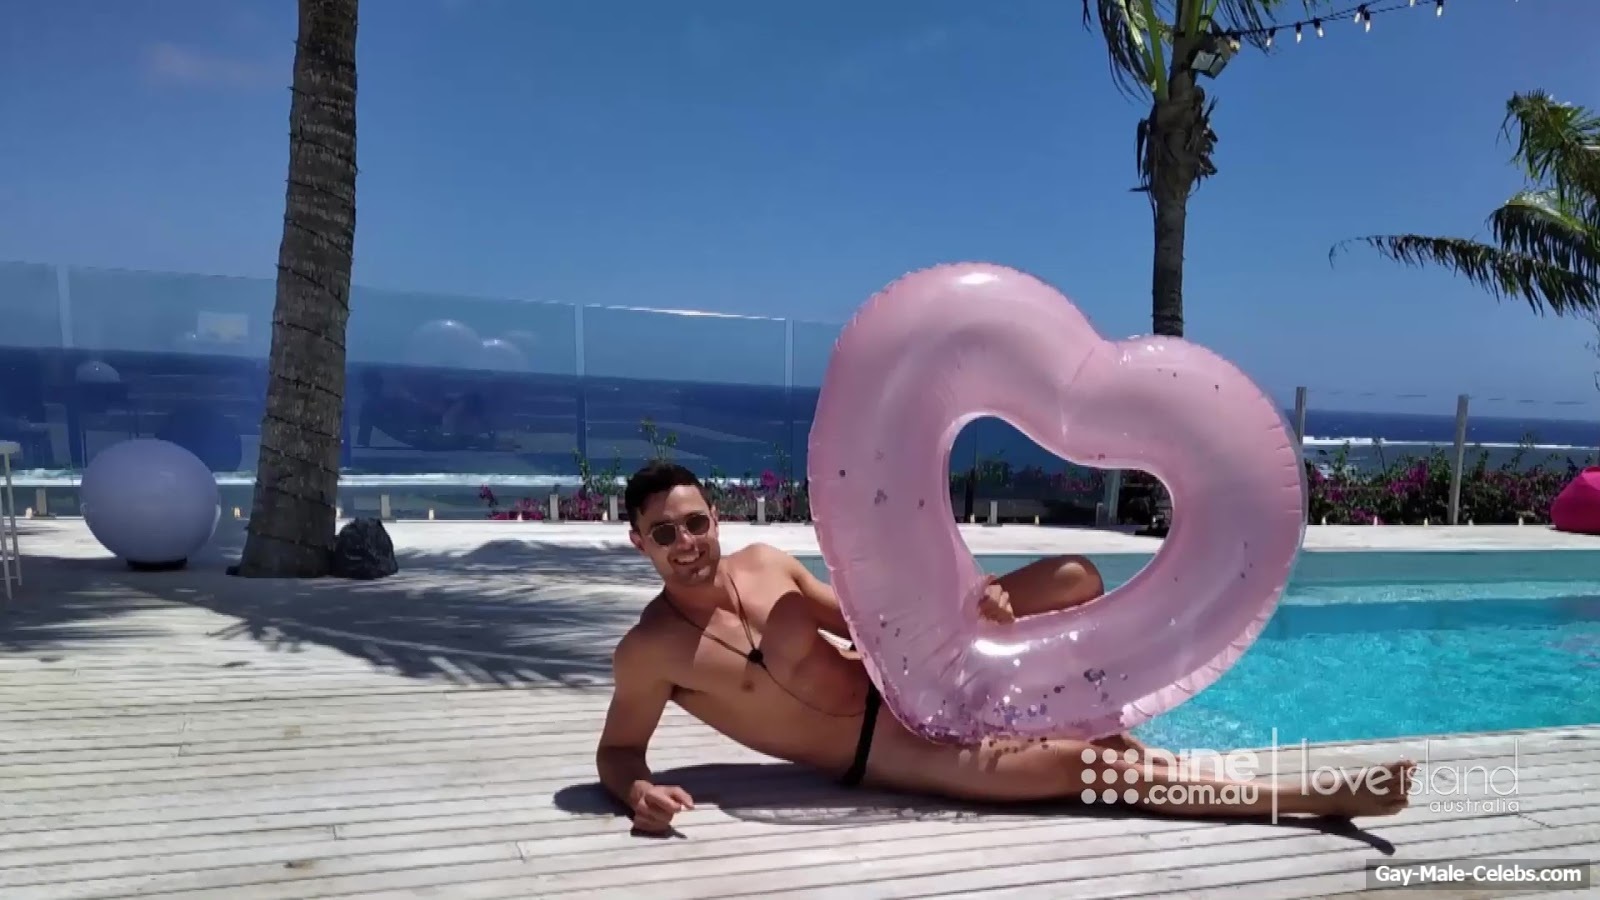 Gerard Majda Nude Bubble Butt In Love Island Australia